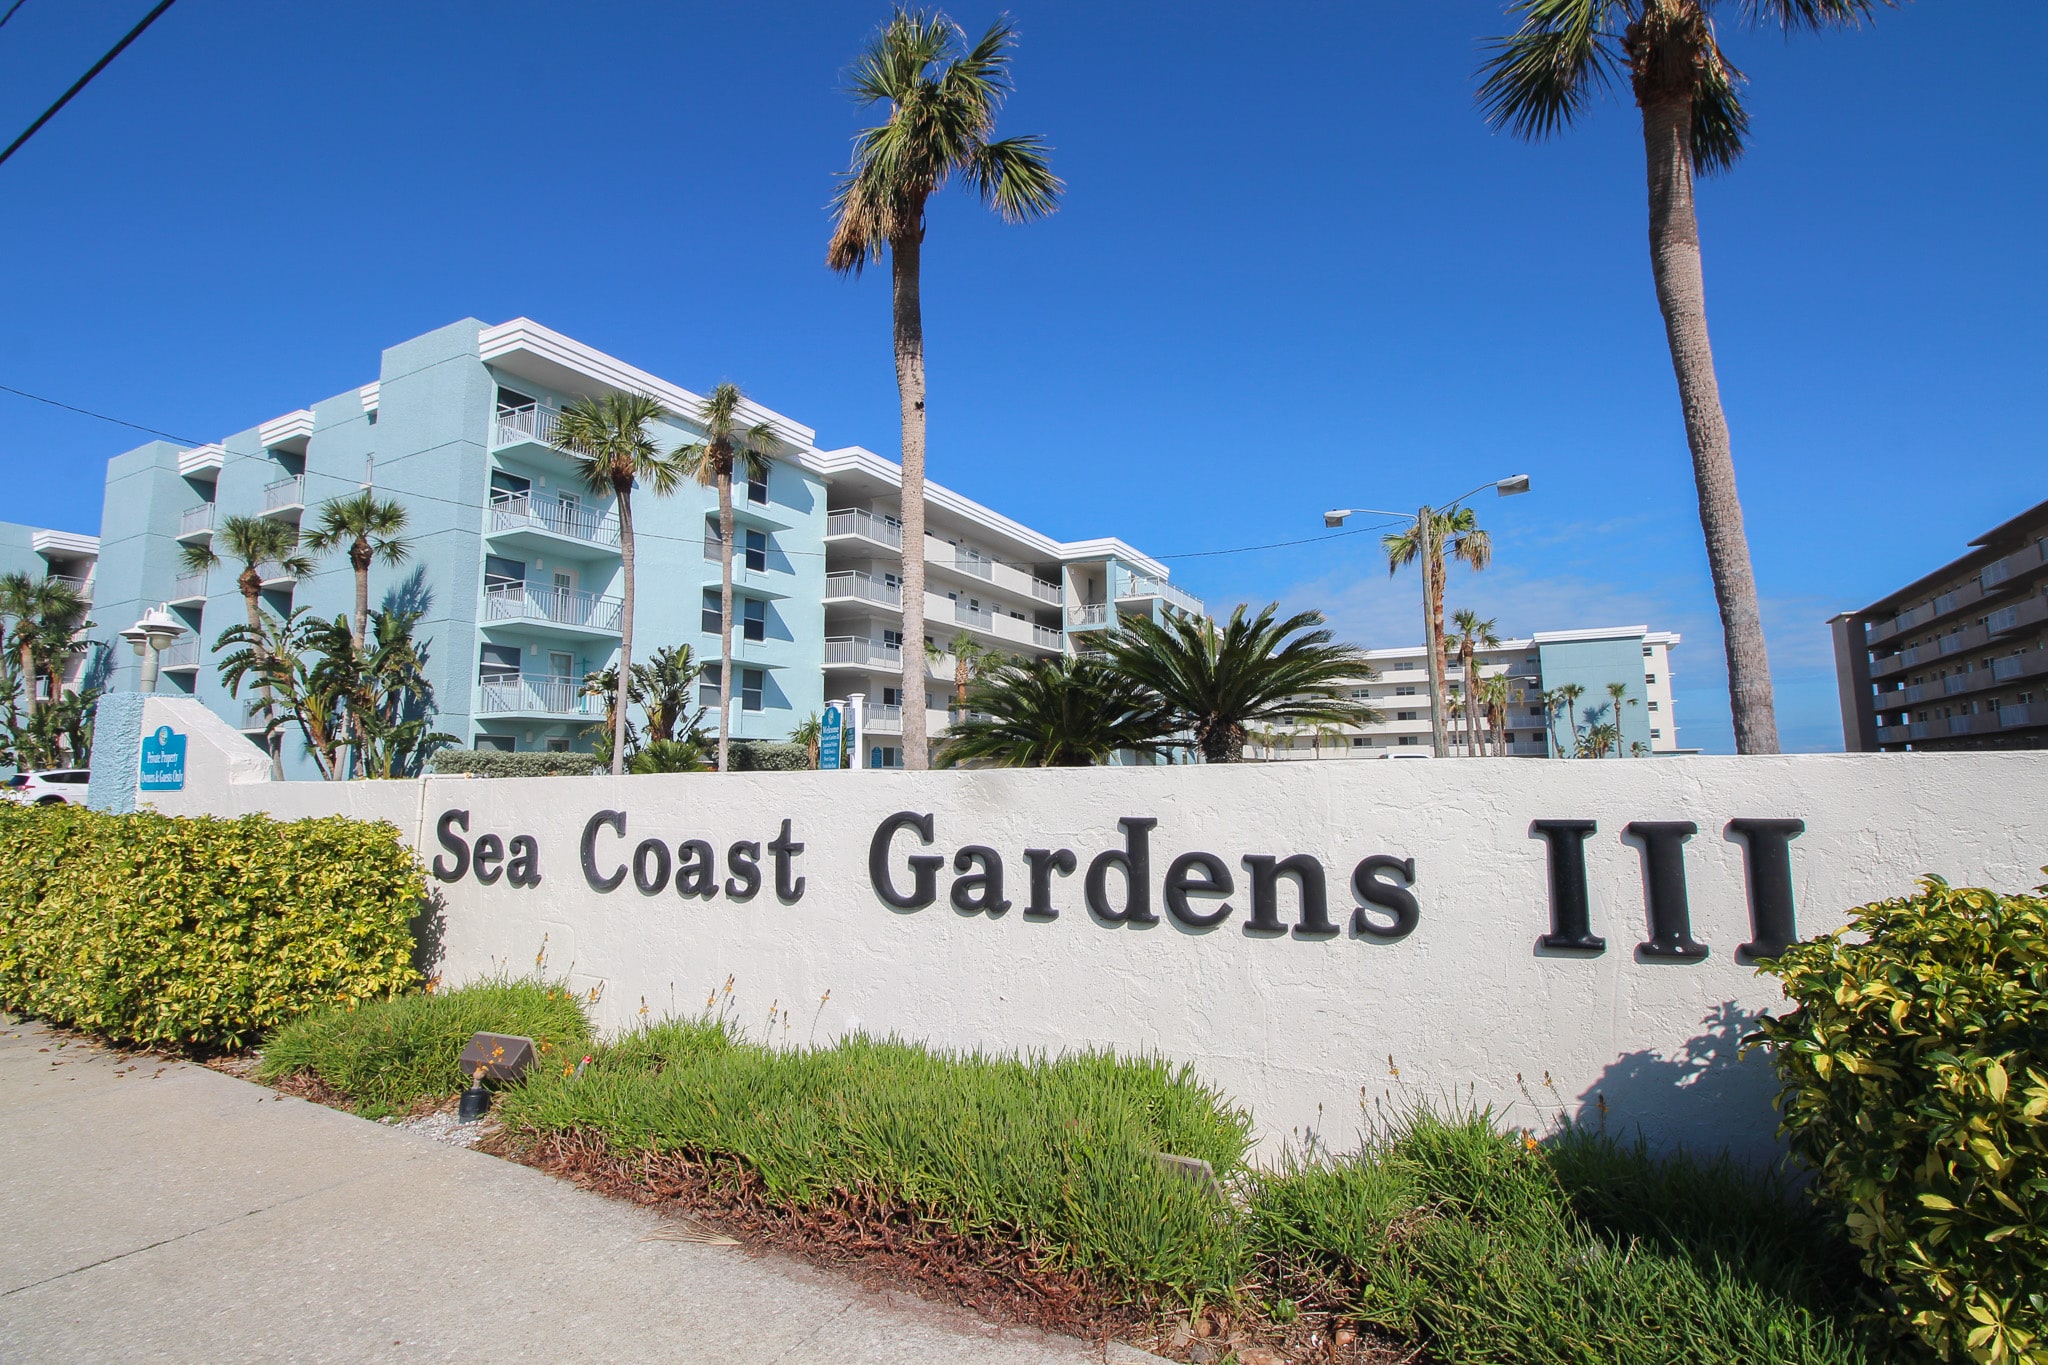 Sea Coast Gardens III